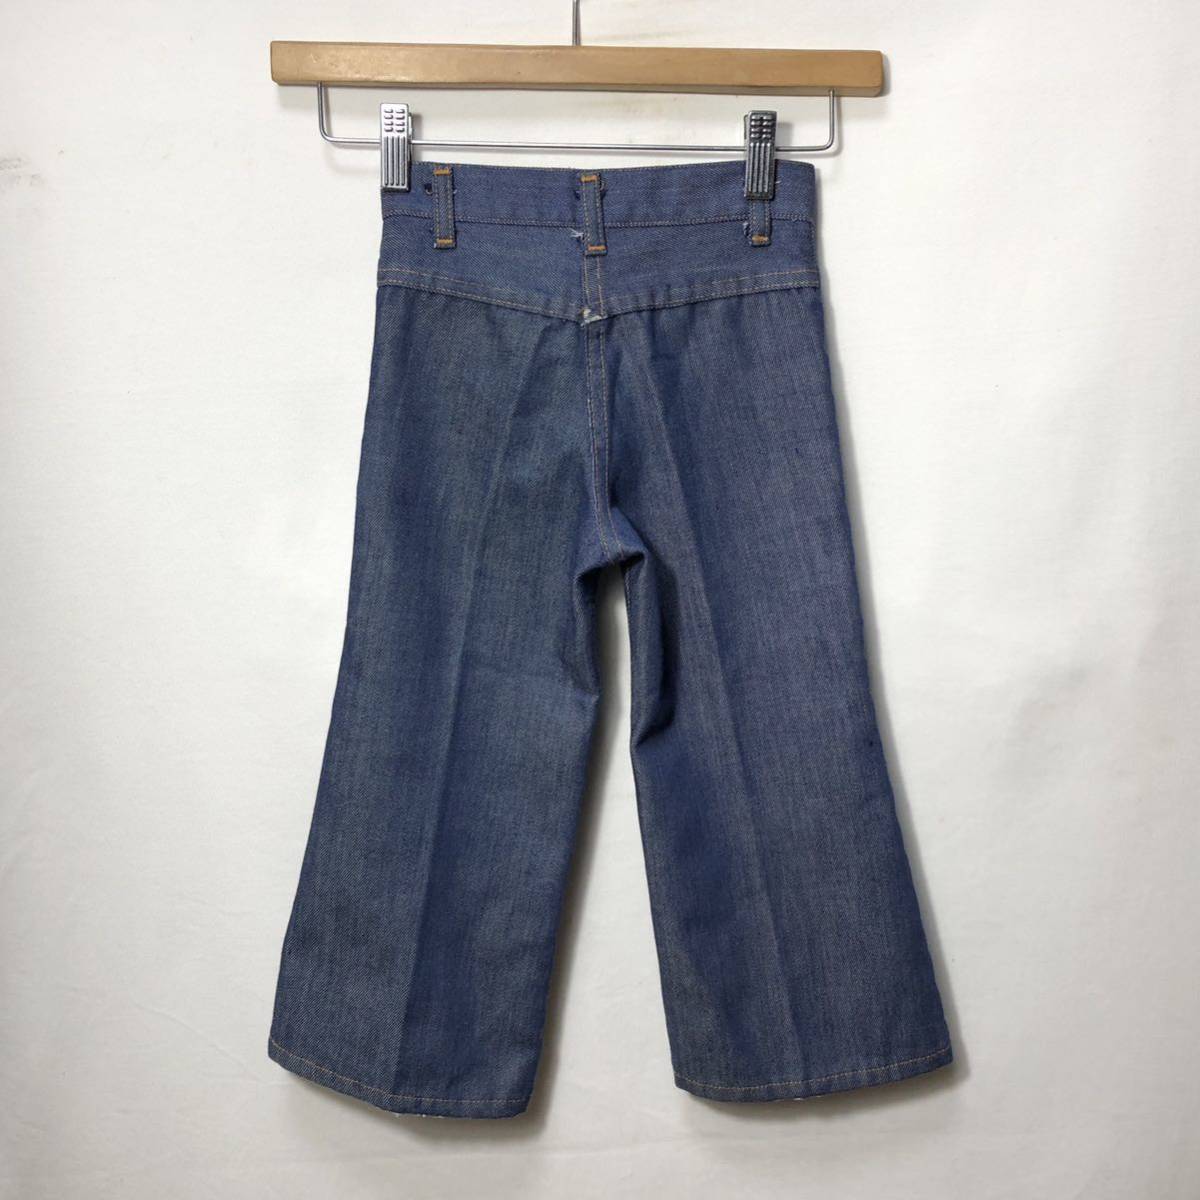 # детский Vintage поли . bat большой Baker карман ботинки cut Denim брюки размер 4 синий б/у одежда American Casual индиго Kids #